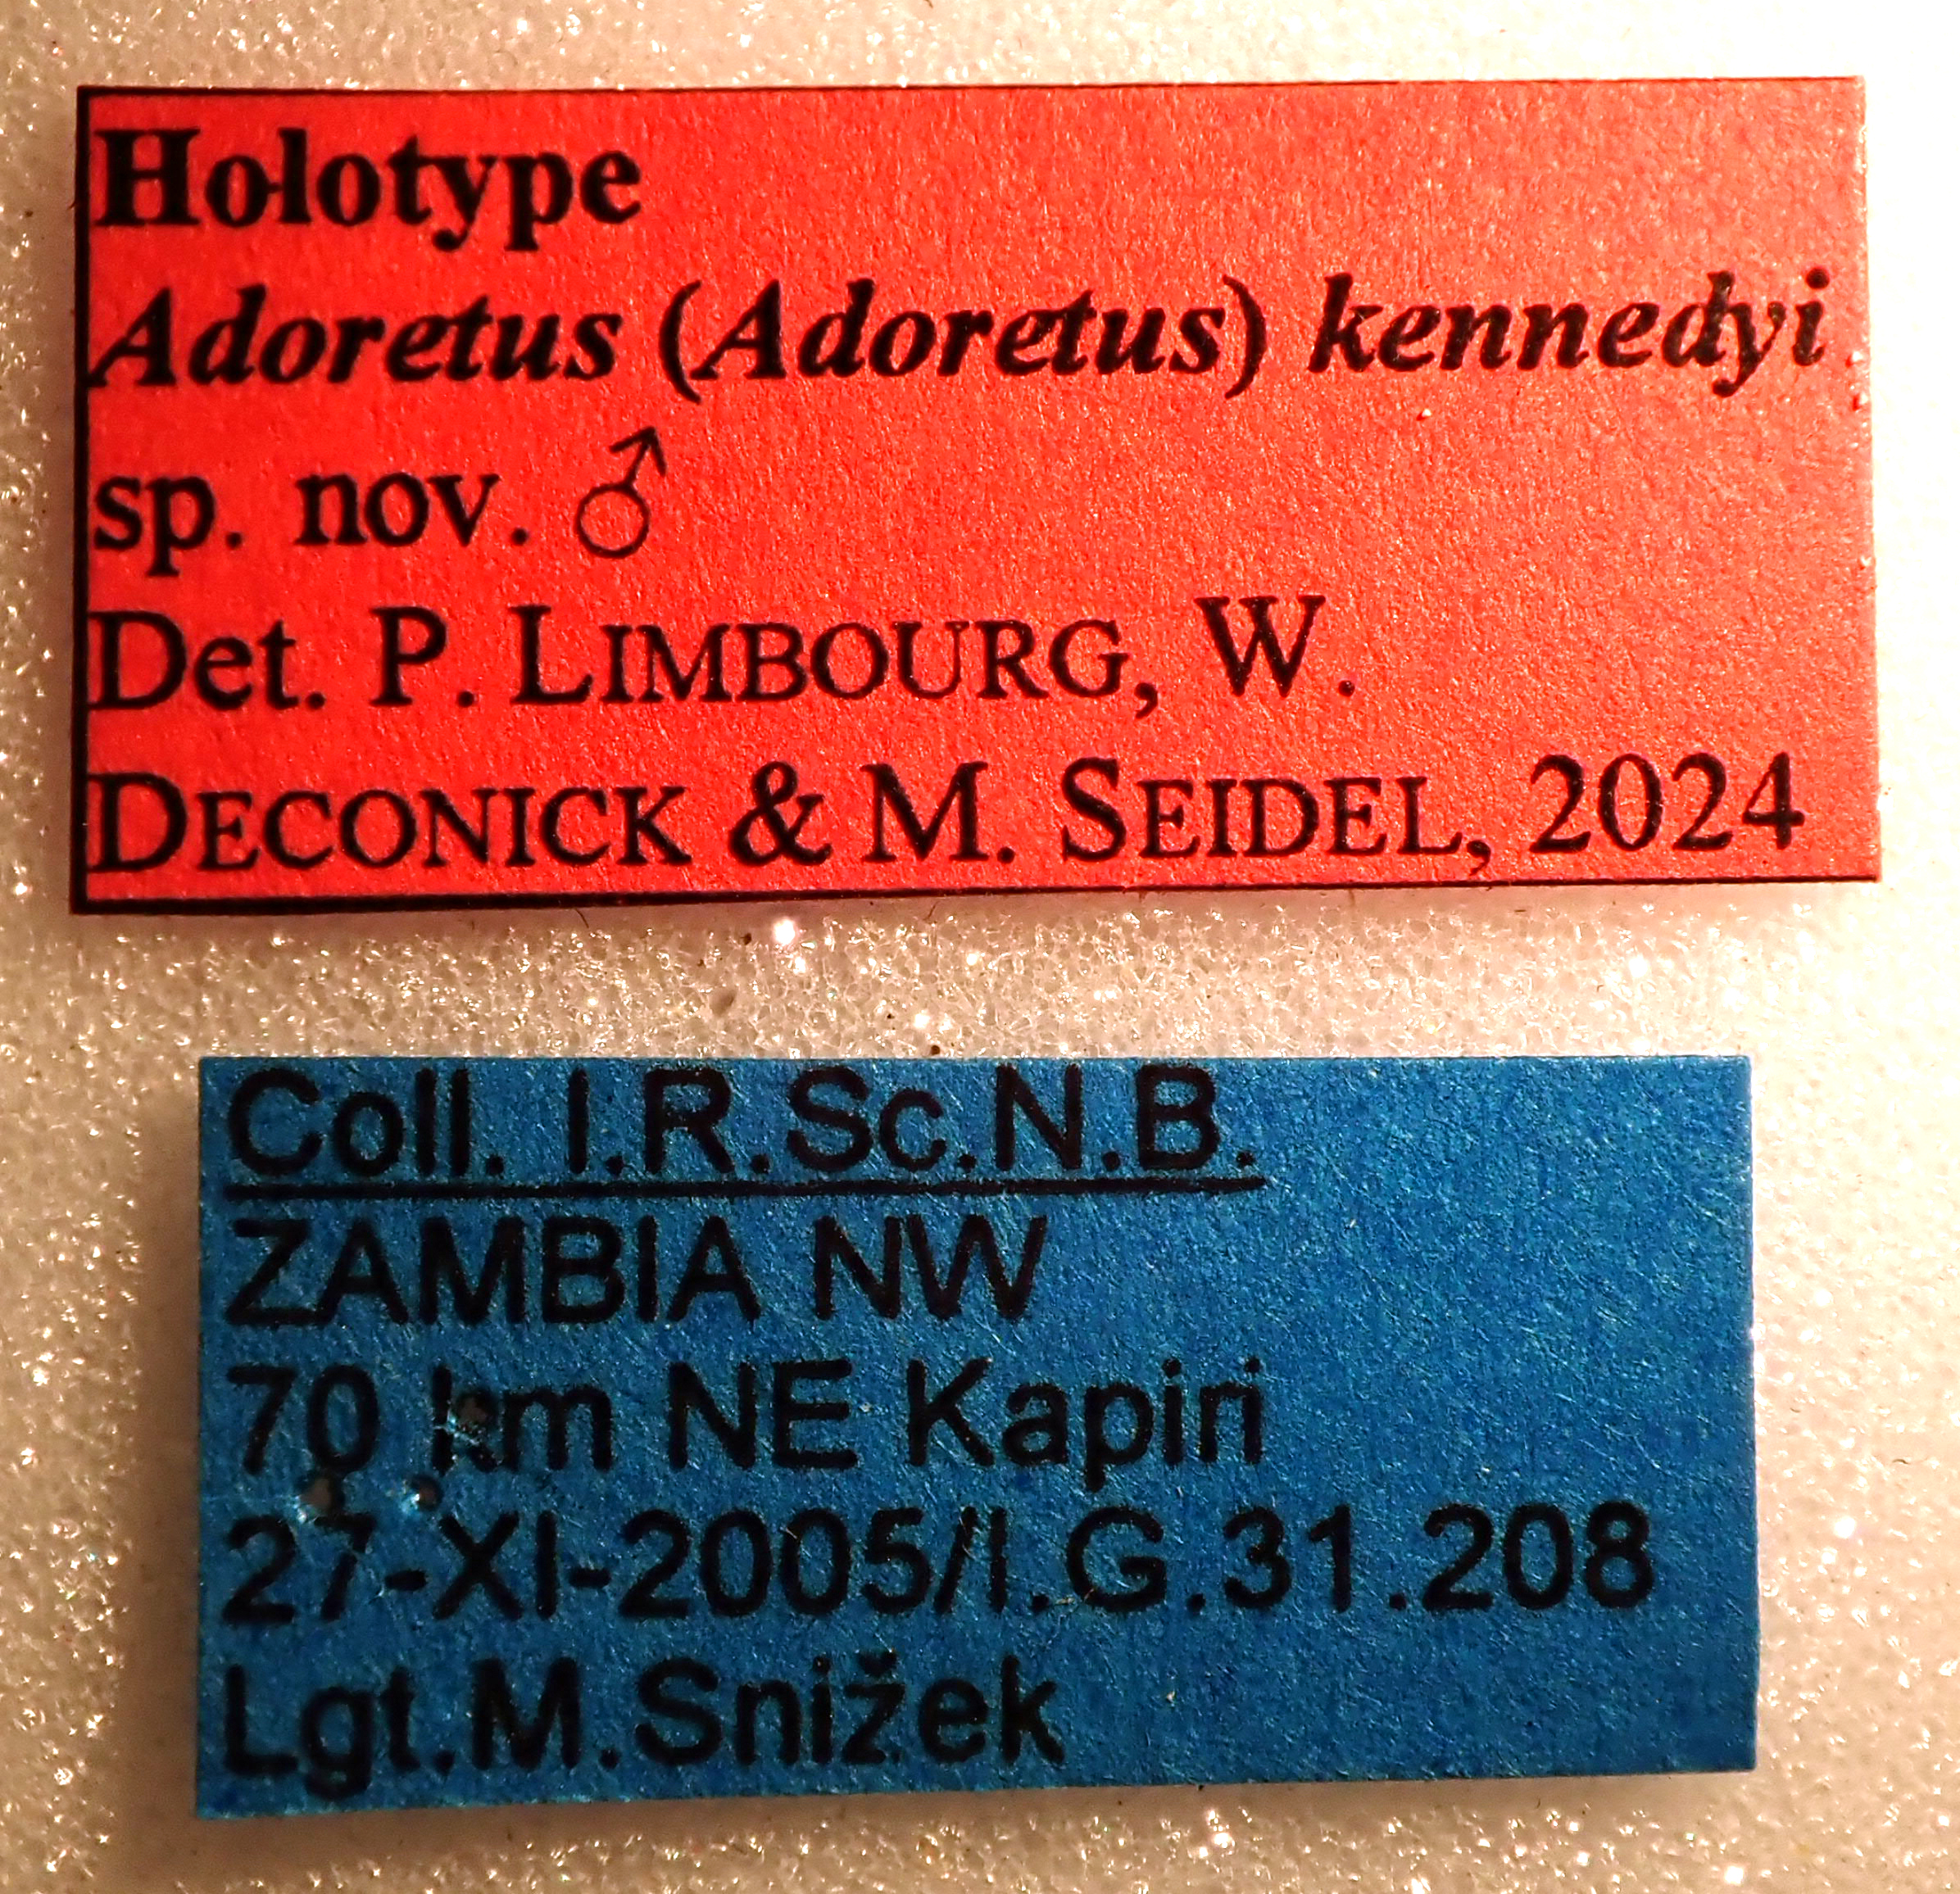 Adoretus (Adoretus) kennedyi Ht labels